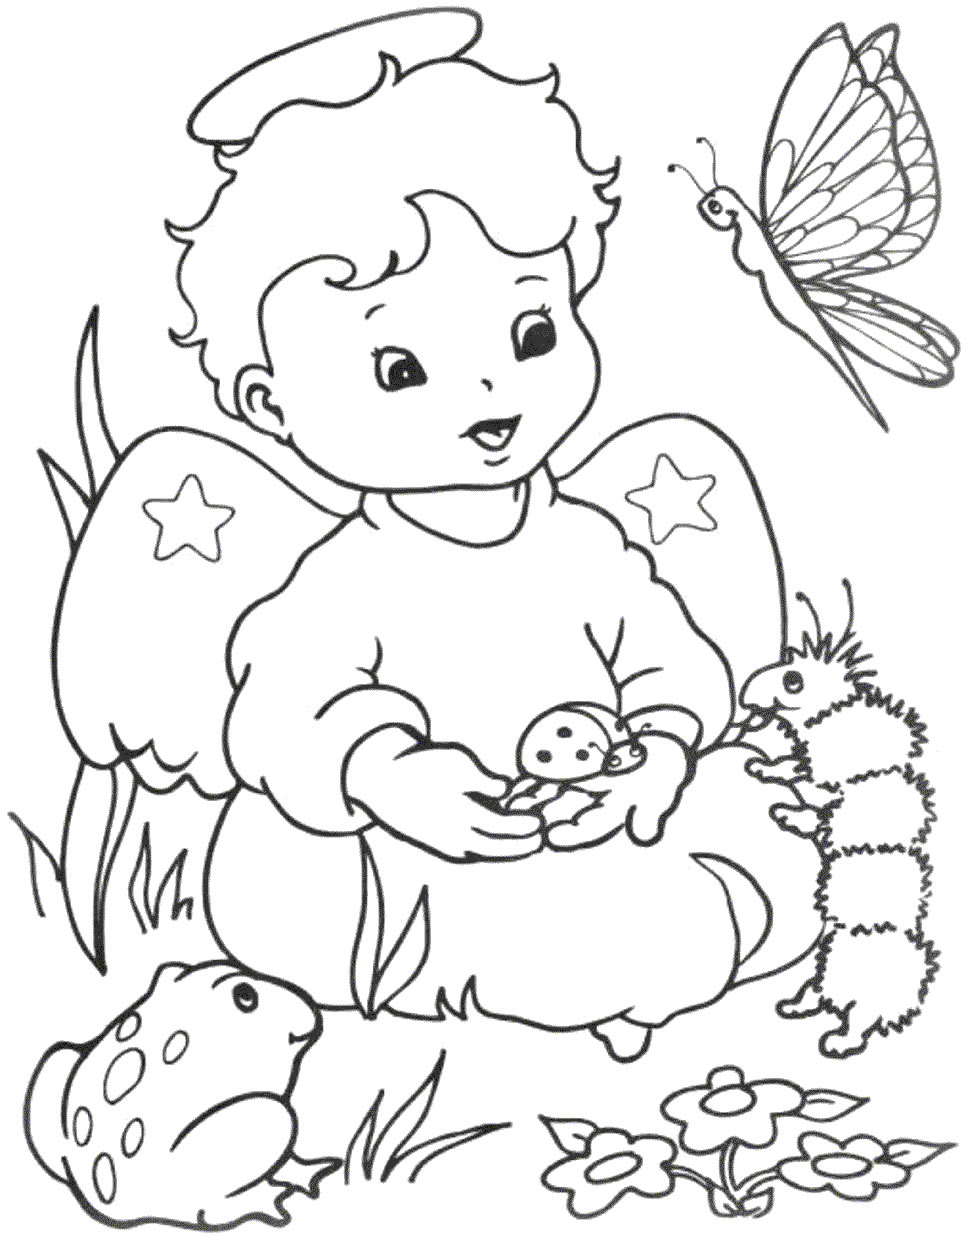 angeli 2, disegni per bambini da colorare